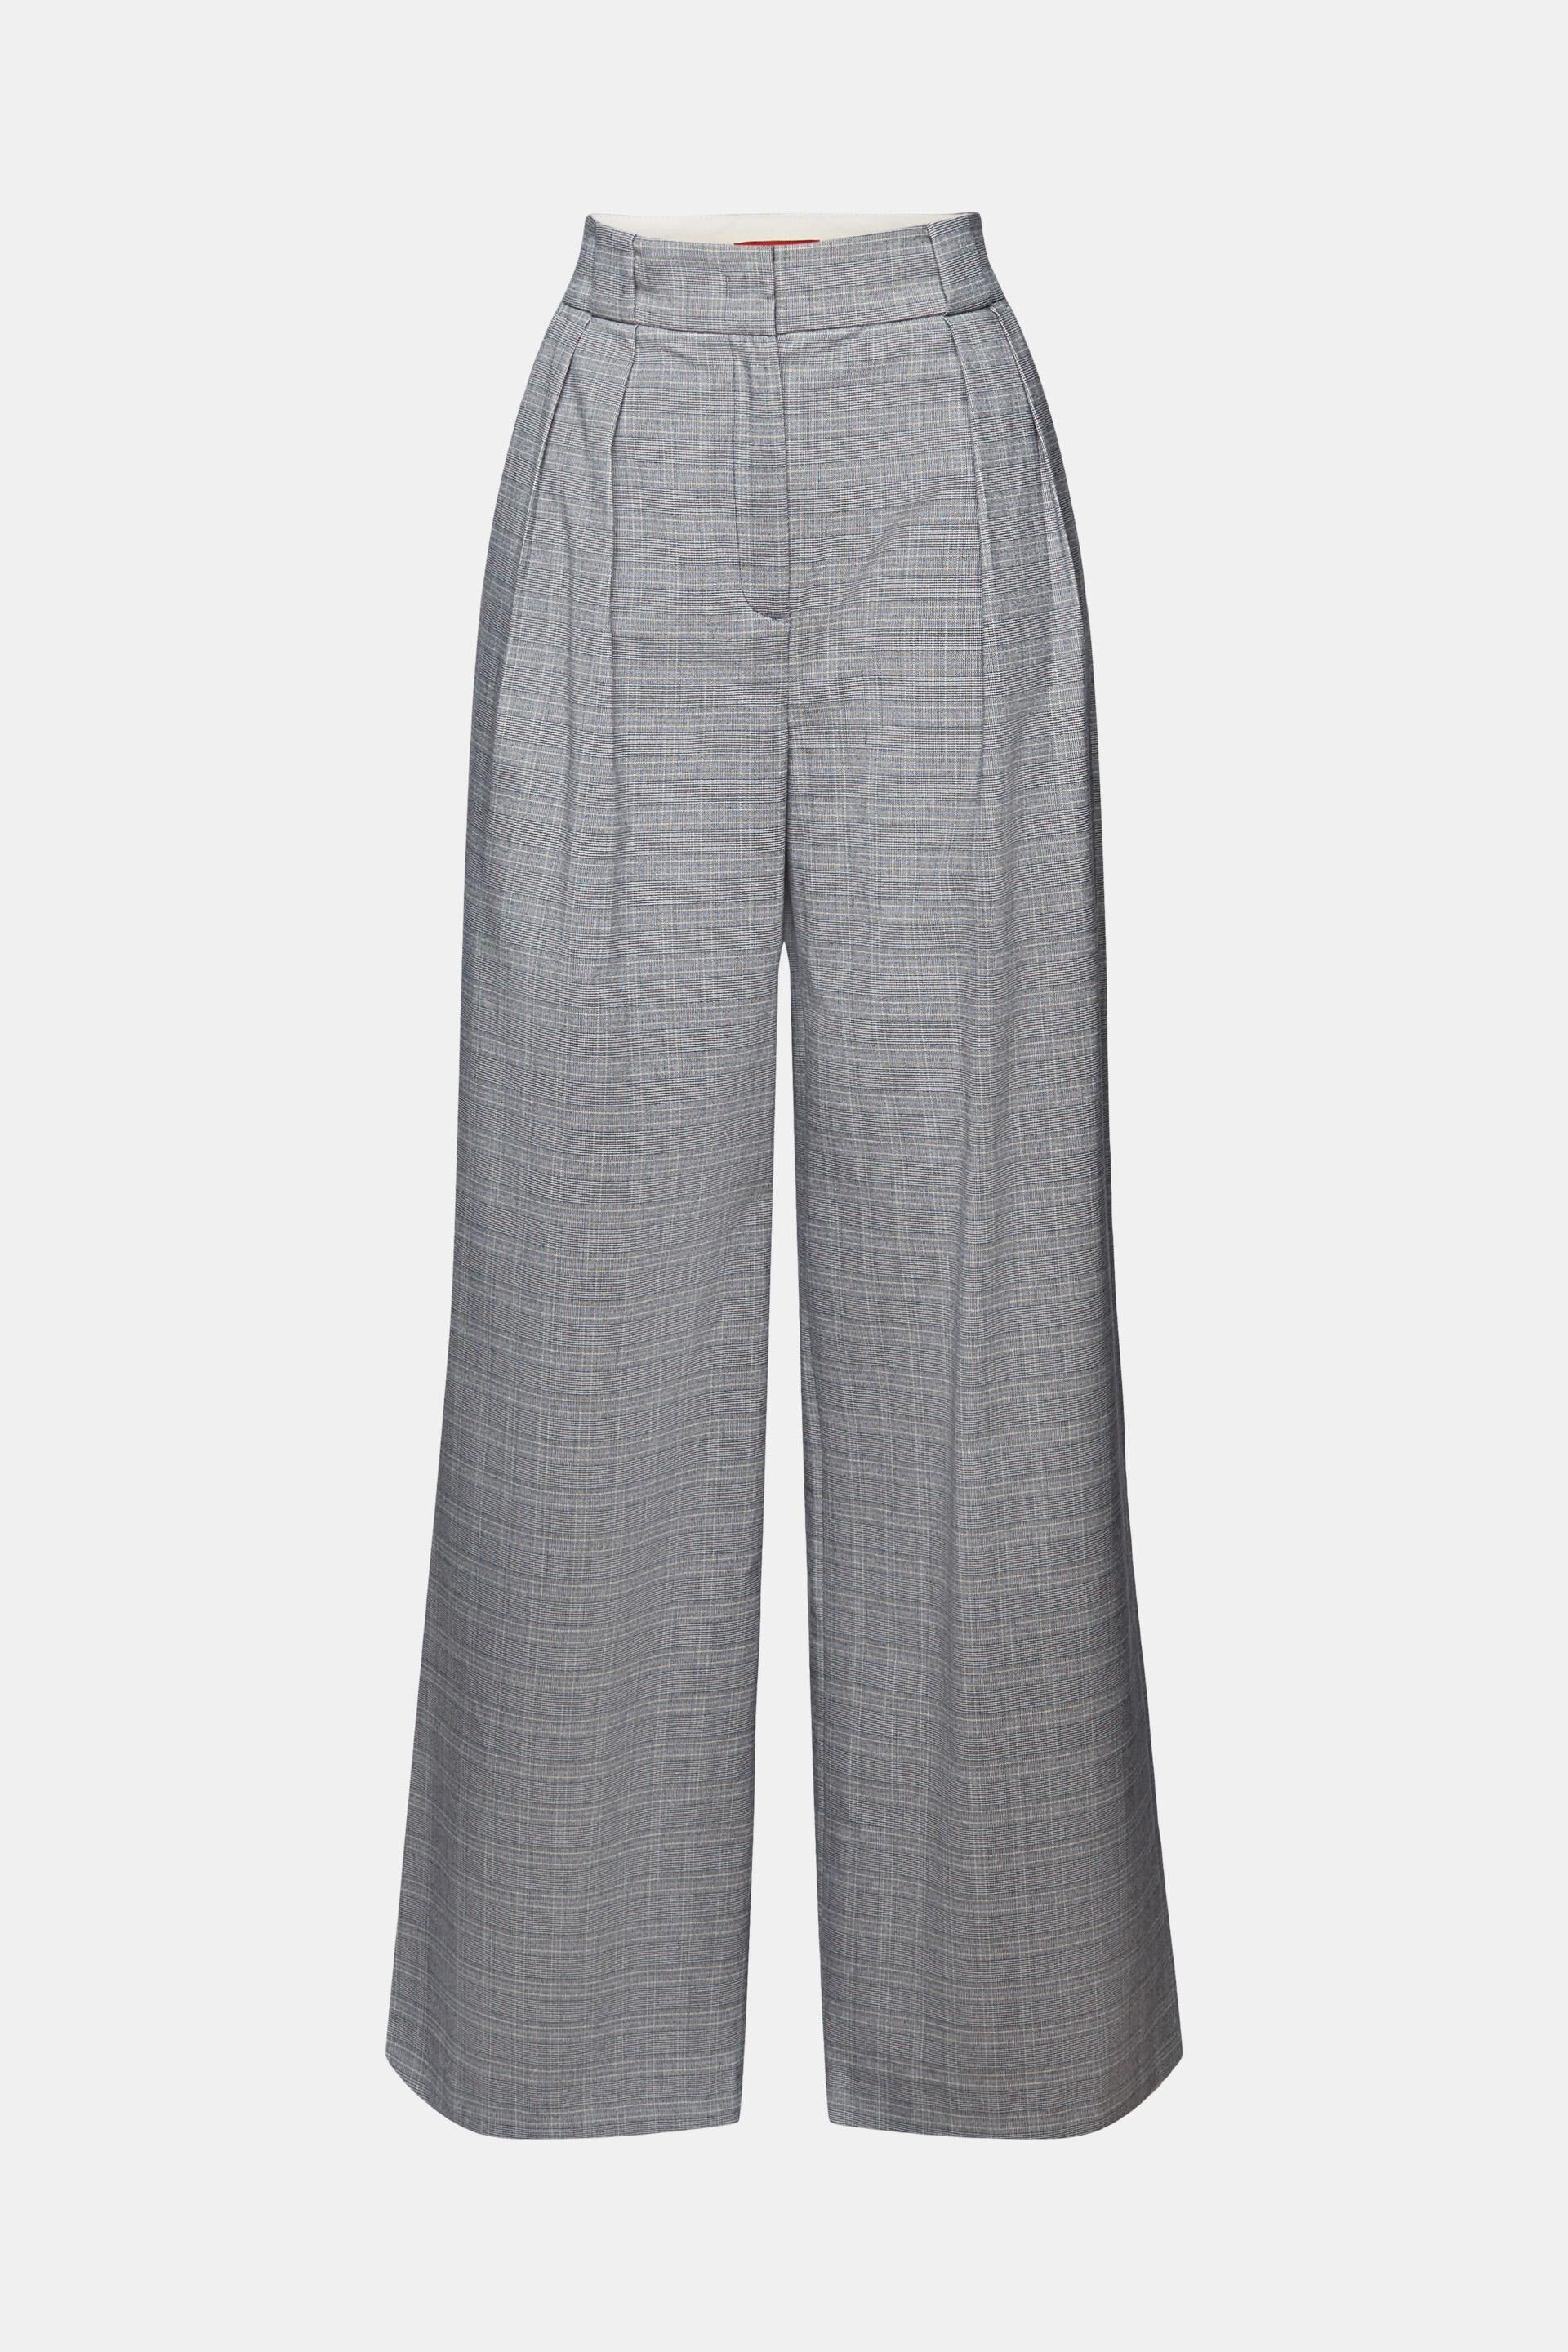 Les Copains Black & White Micro Check Wool Blend Wide Leg Trousers Size 46  Pants | eBay